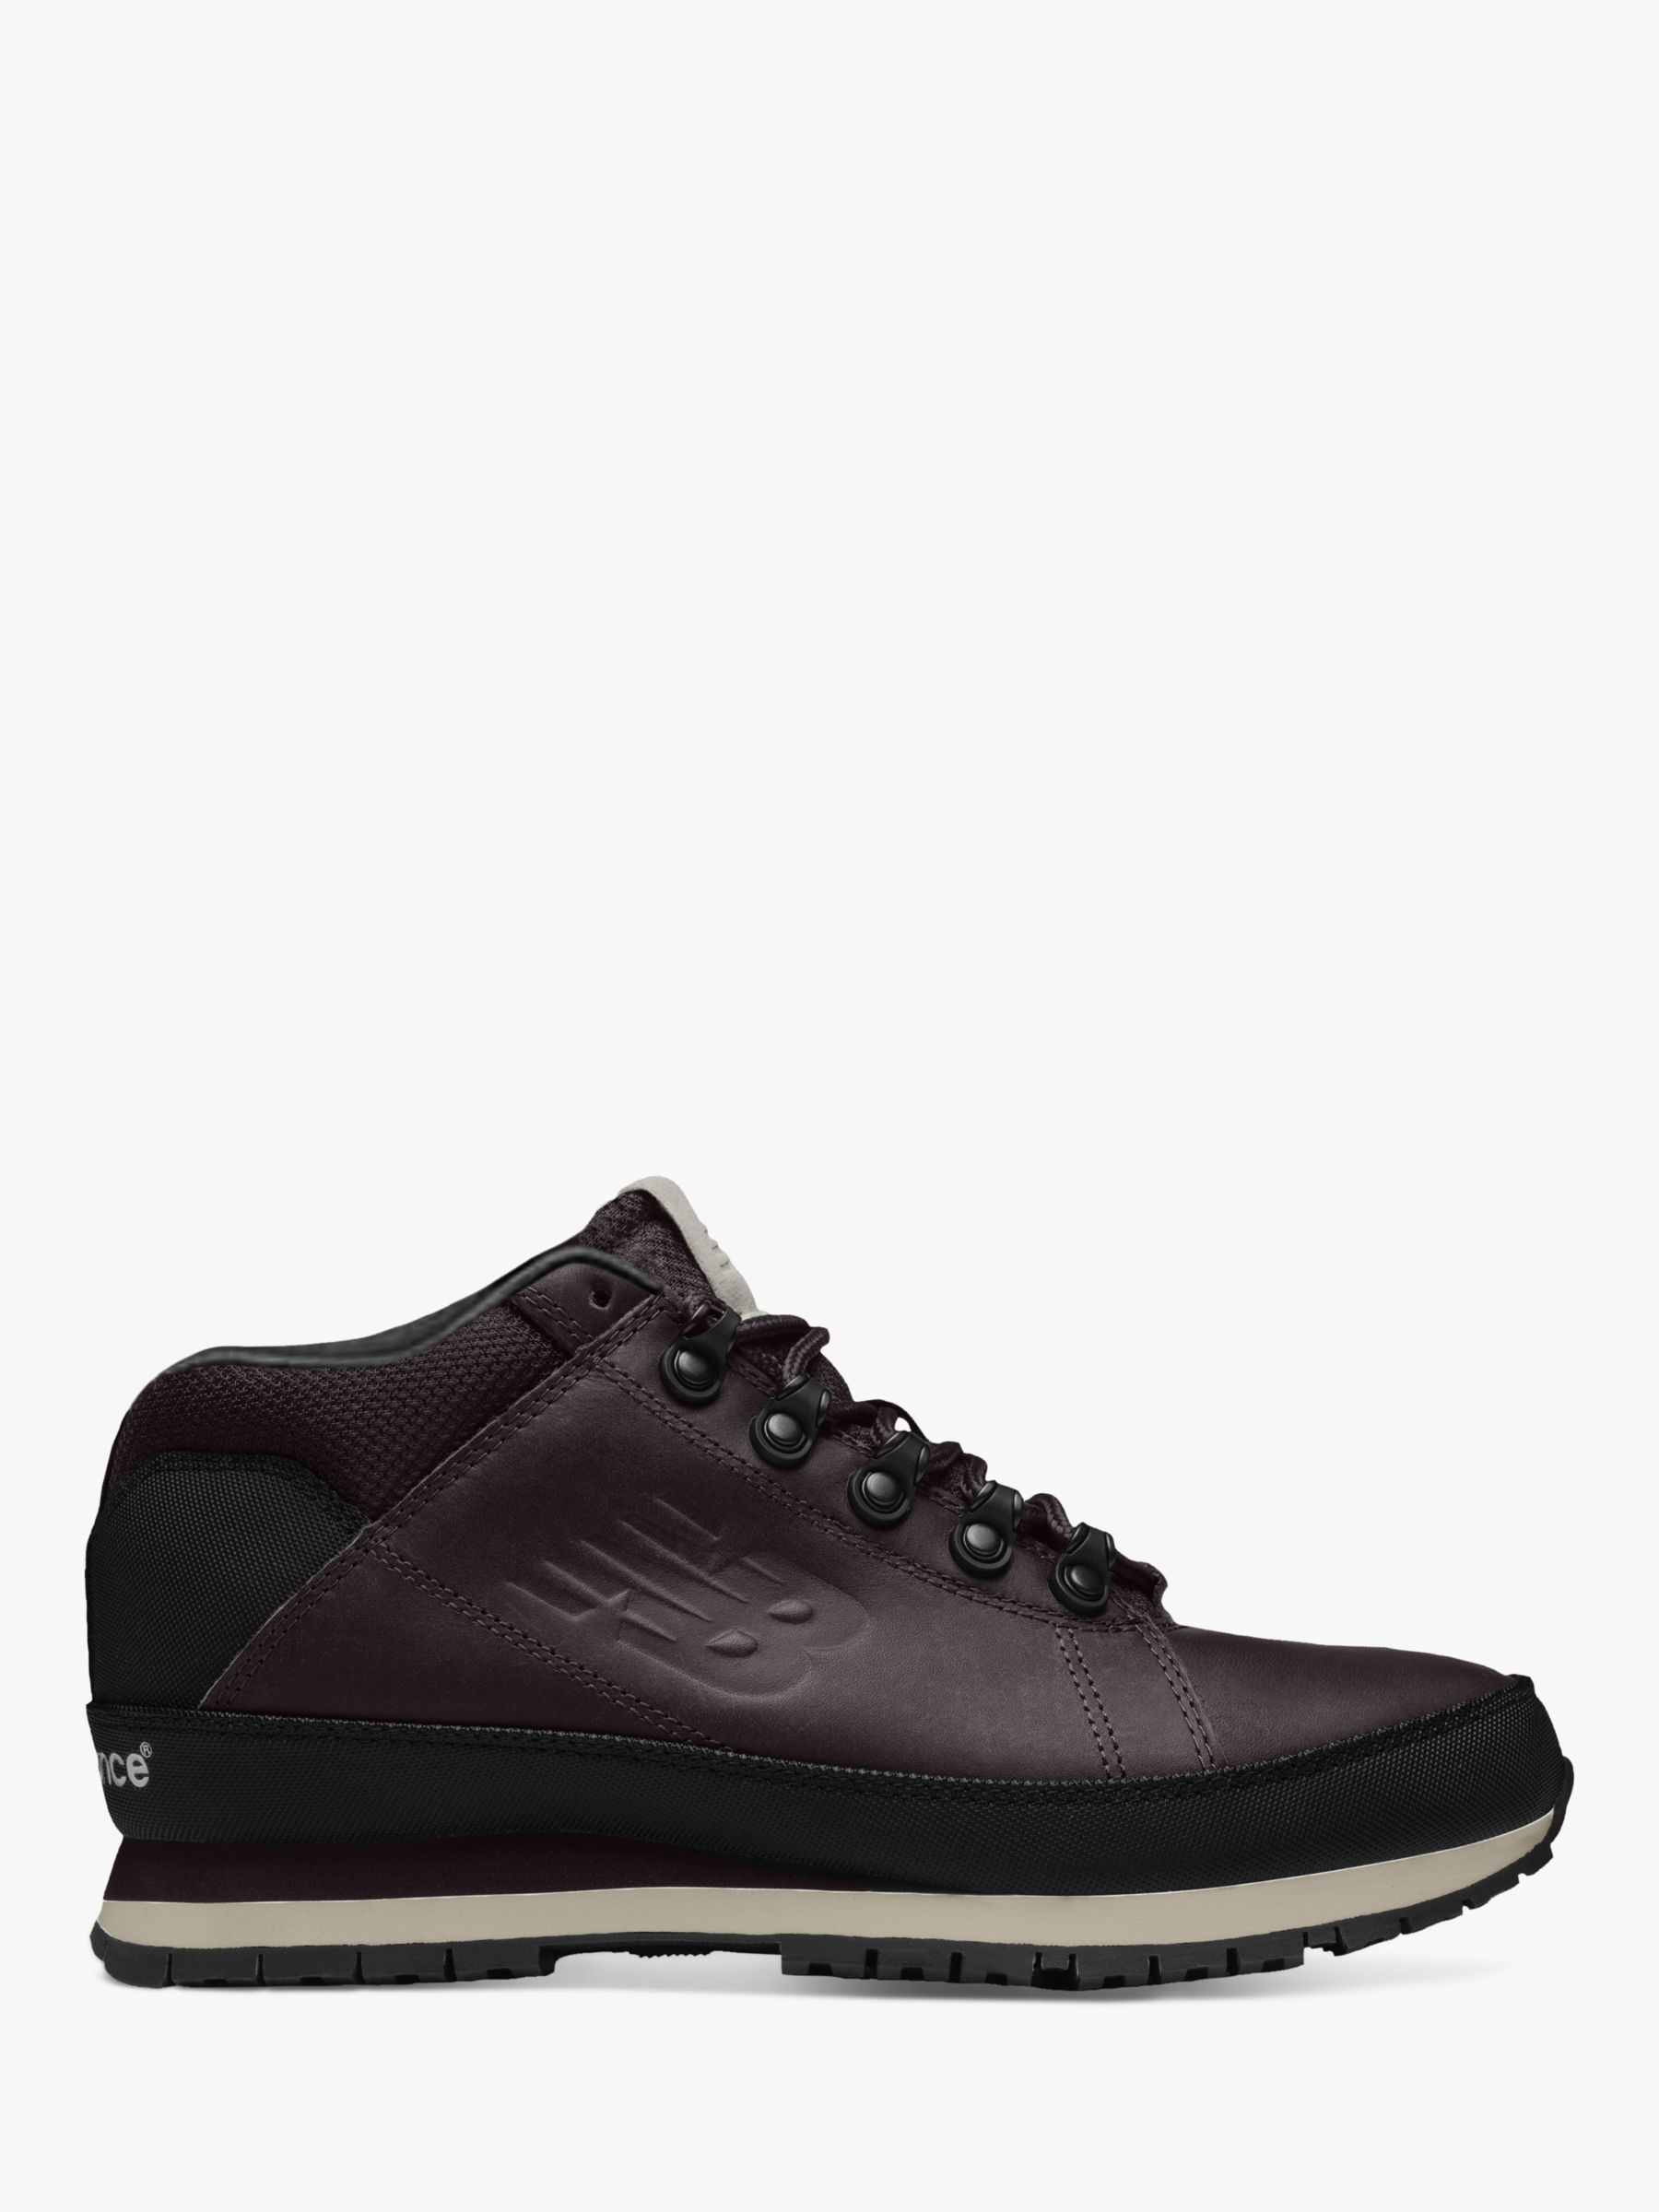 Кожаные туфли New Balance 754, темно-коричневые